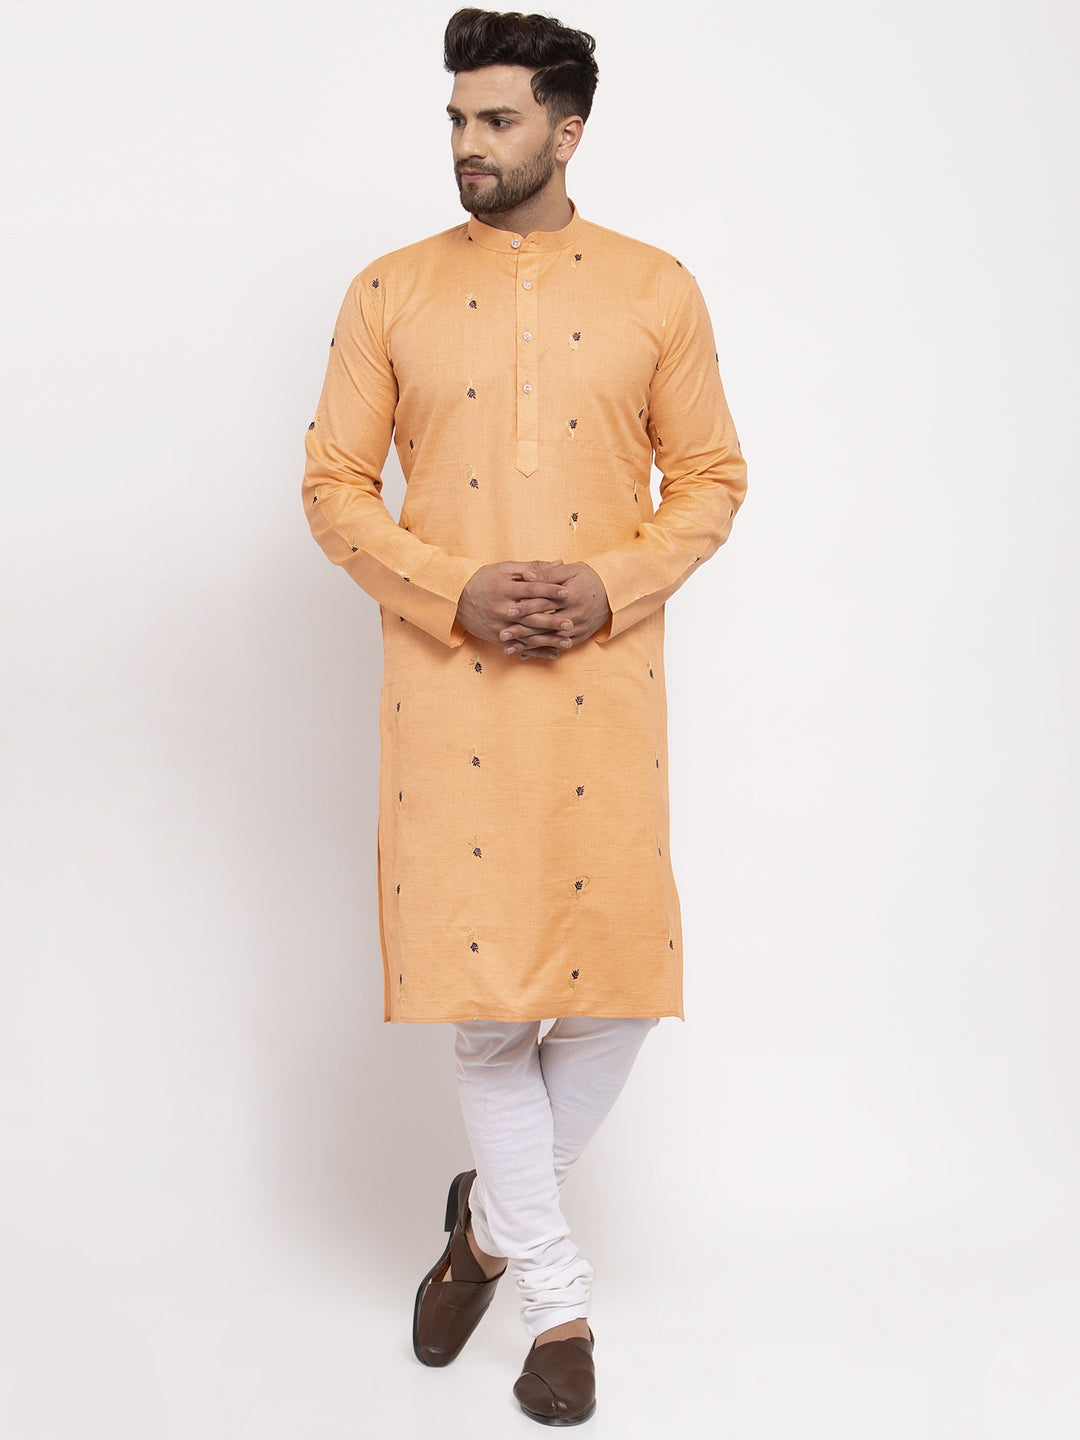 Men's Orange Printed Cotton Kurta Payjama Sets ( JOKP 635 Orange ) - Virat Fashions